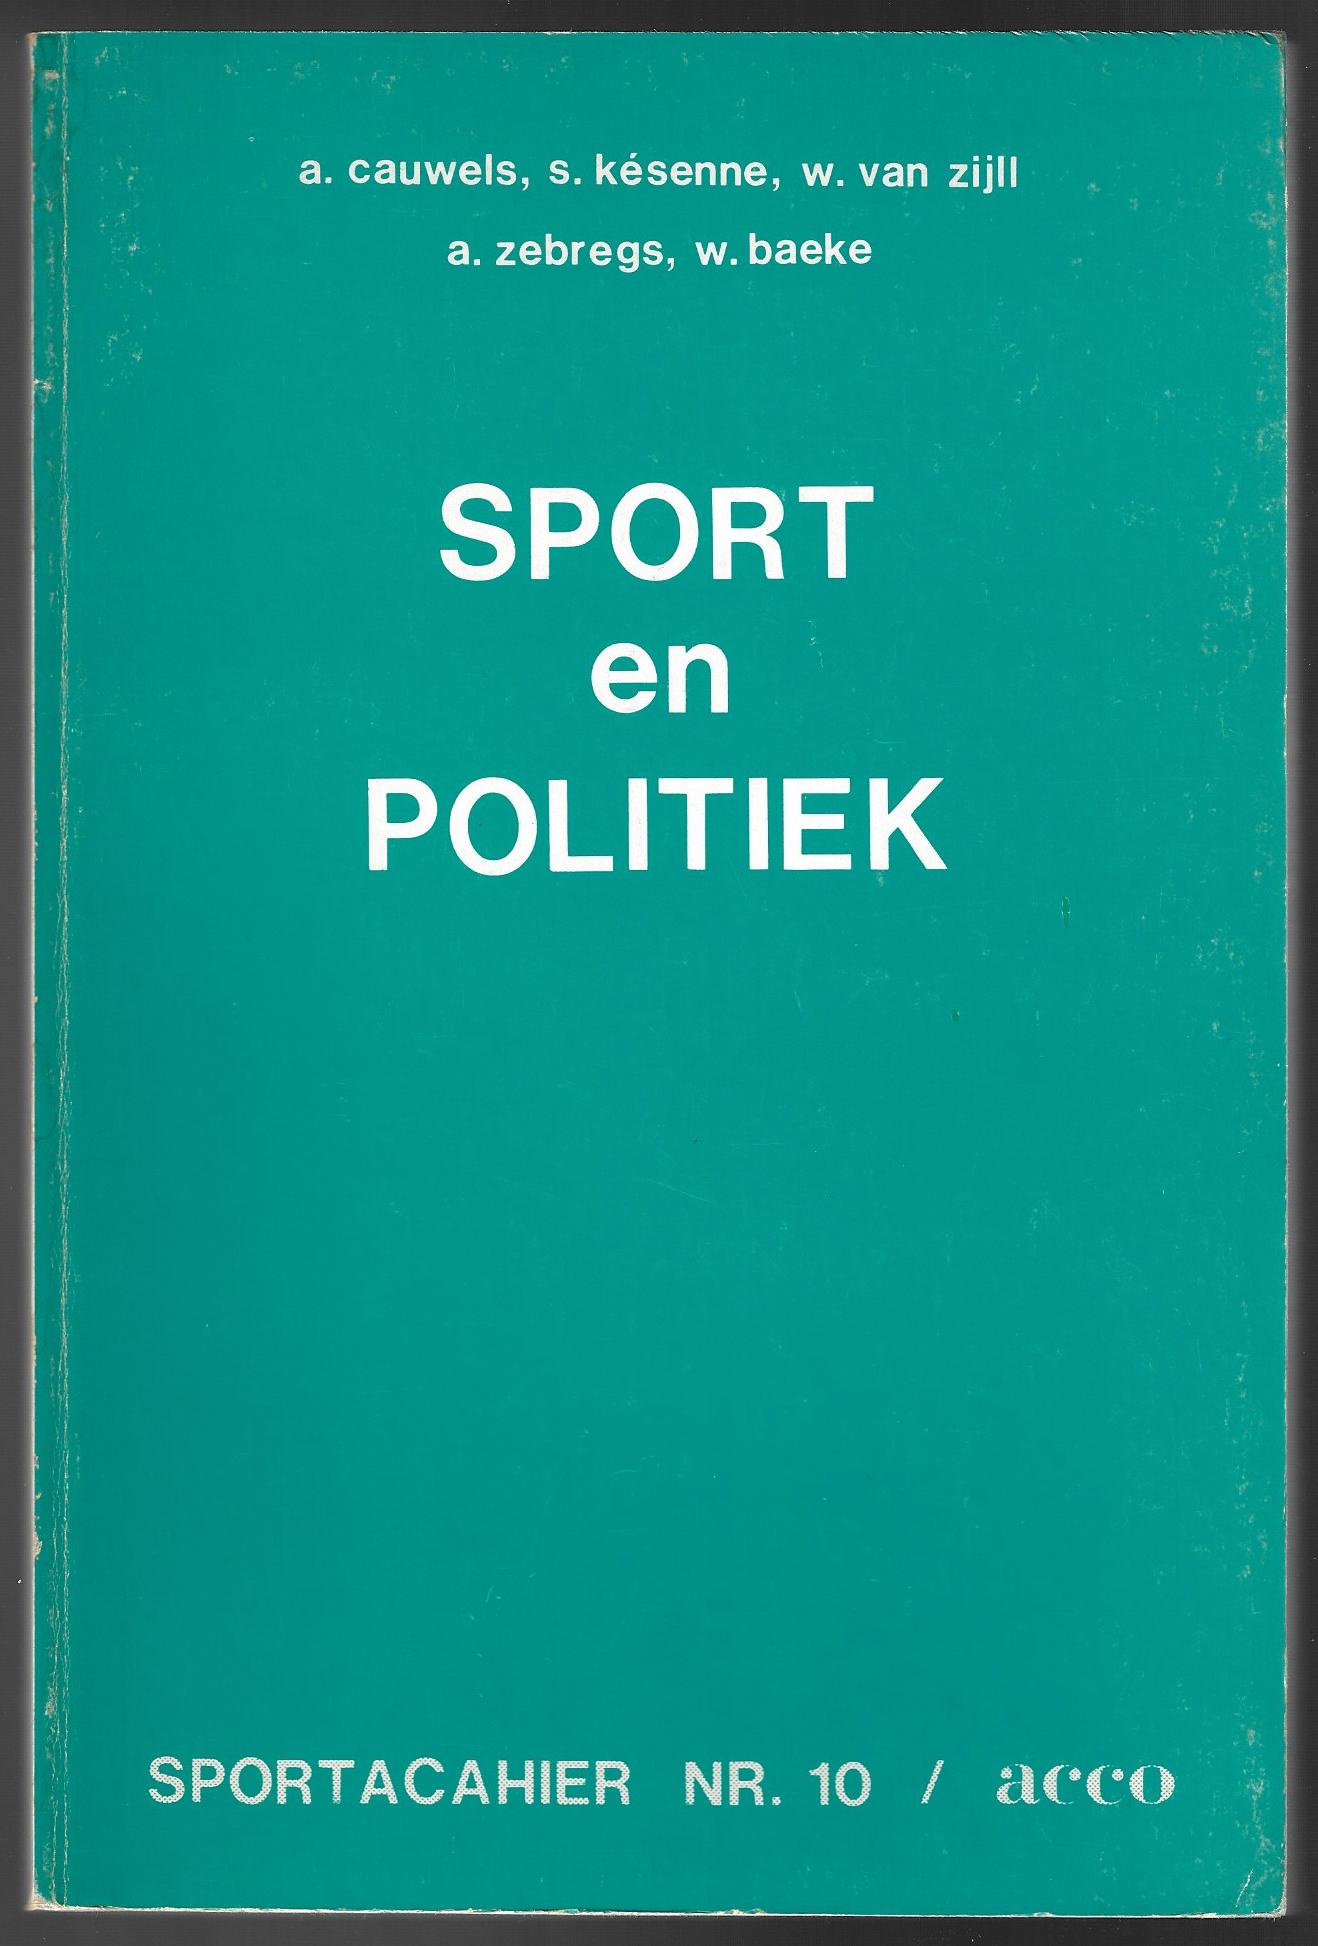 Cauwels, A. / Ksenne S. / Zijll, W. van / Zebregs, A. / Baeke, W. - Sport en politiek -Sportcahier nr. 10/Acco